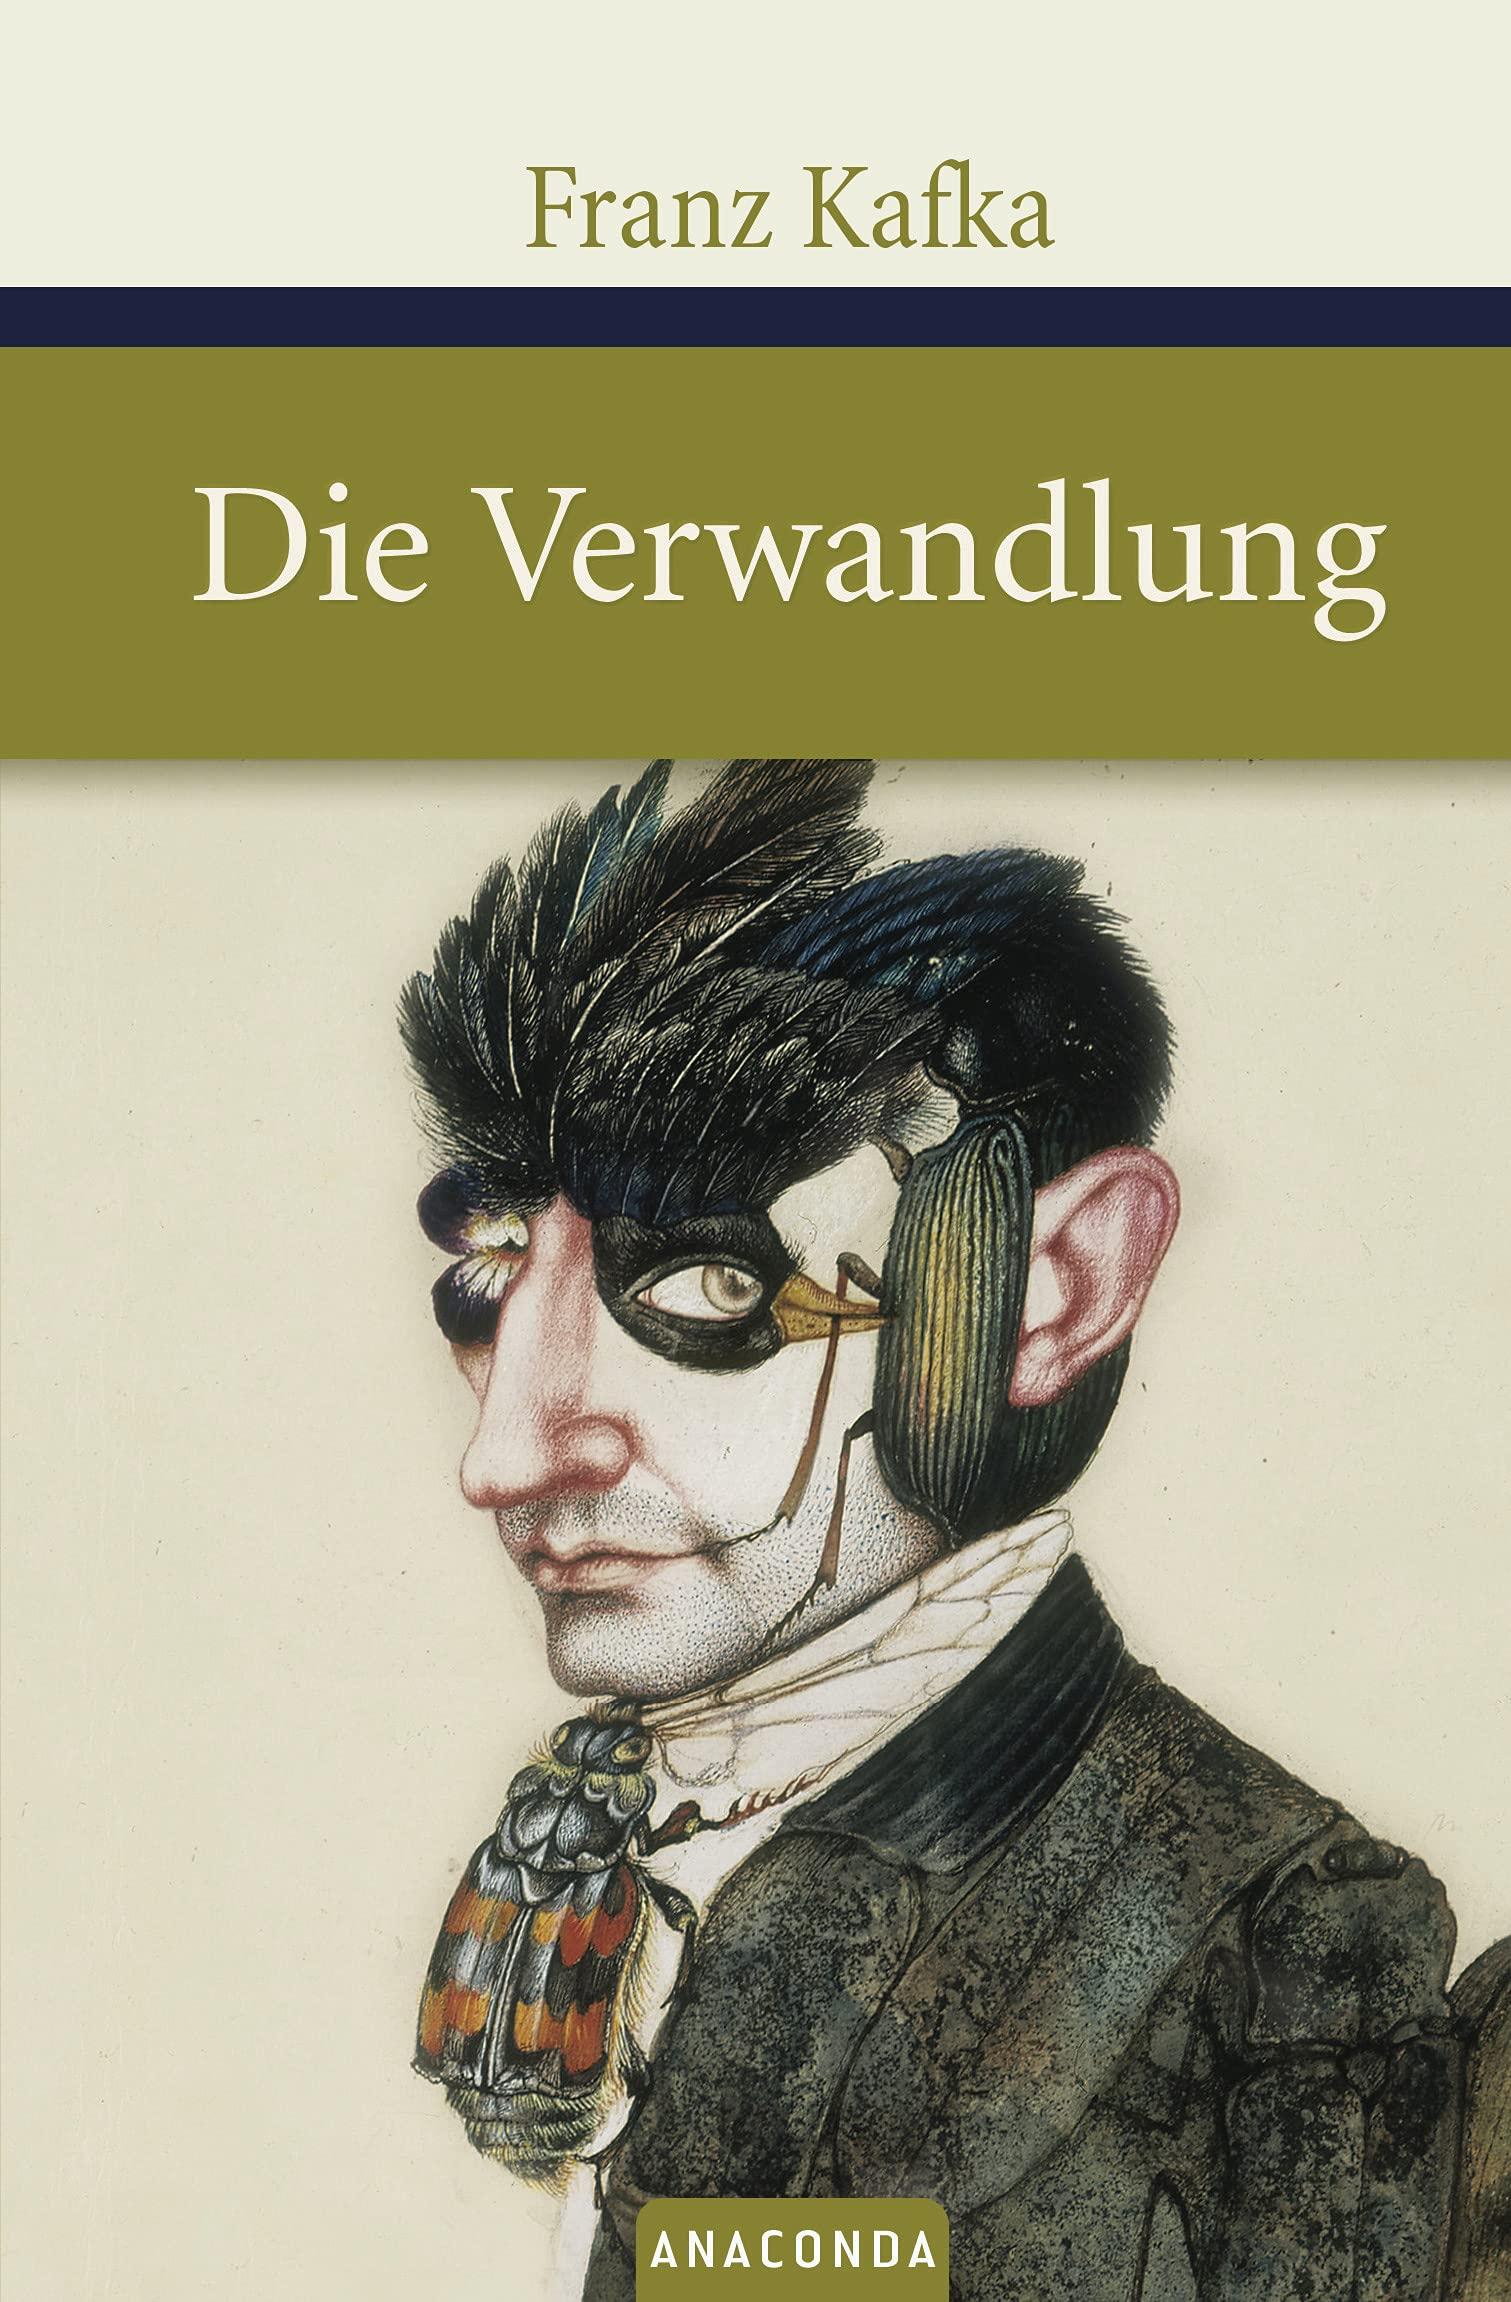 德文原版 变形记 Die Verwandlung 卡夫卡 捷克德语经典文学小说 Franz Kafka 书籍/杂志/报纸 原版其它 原图主图